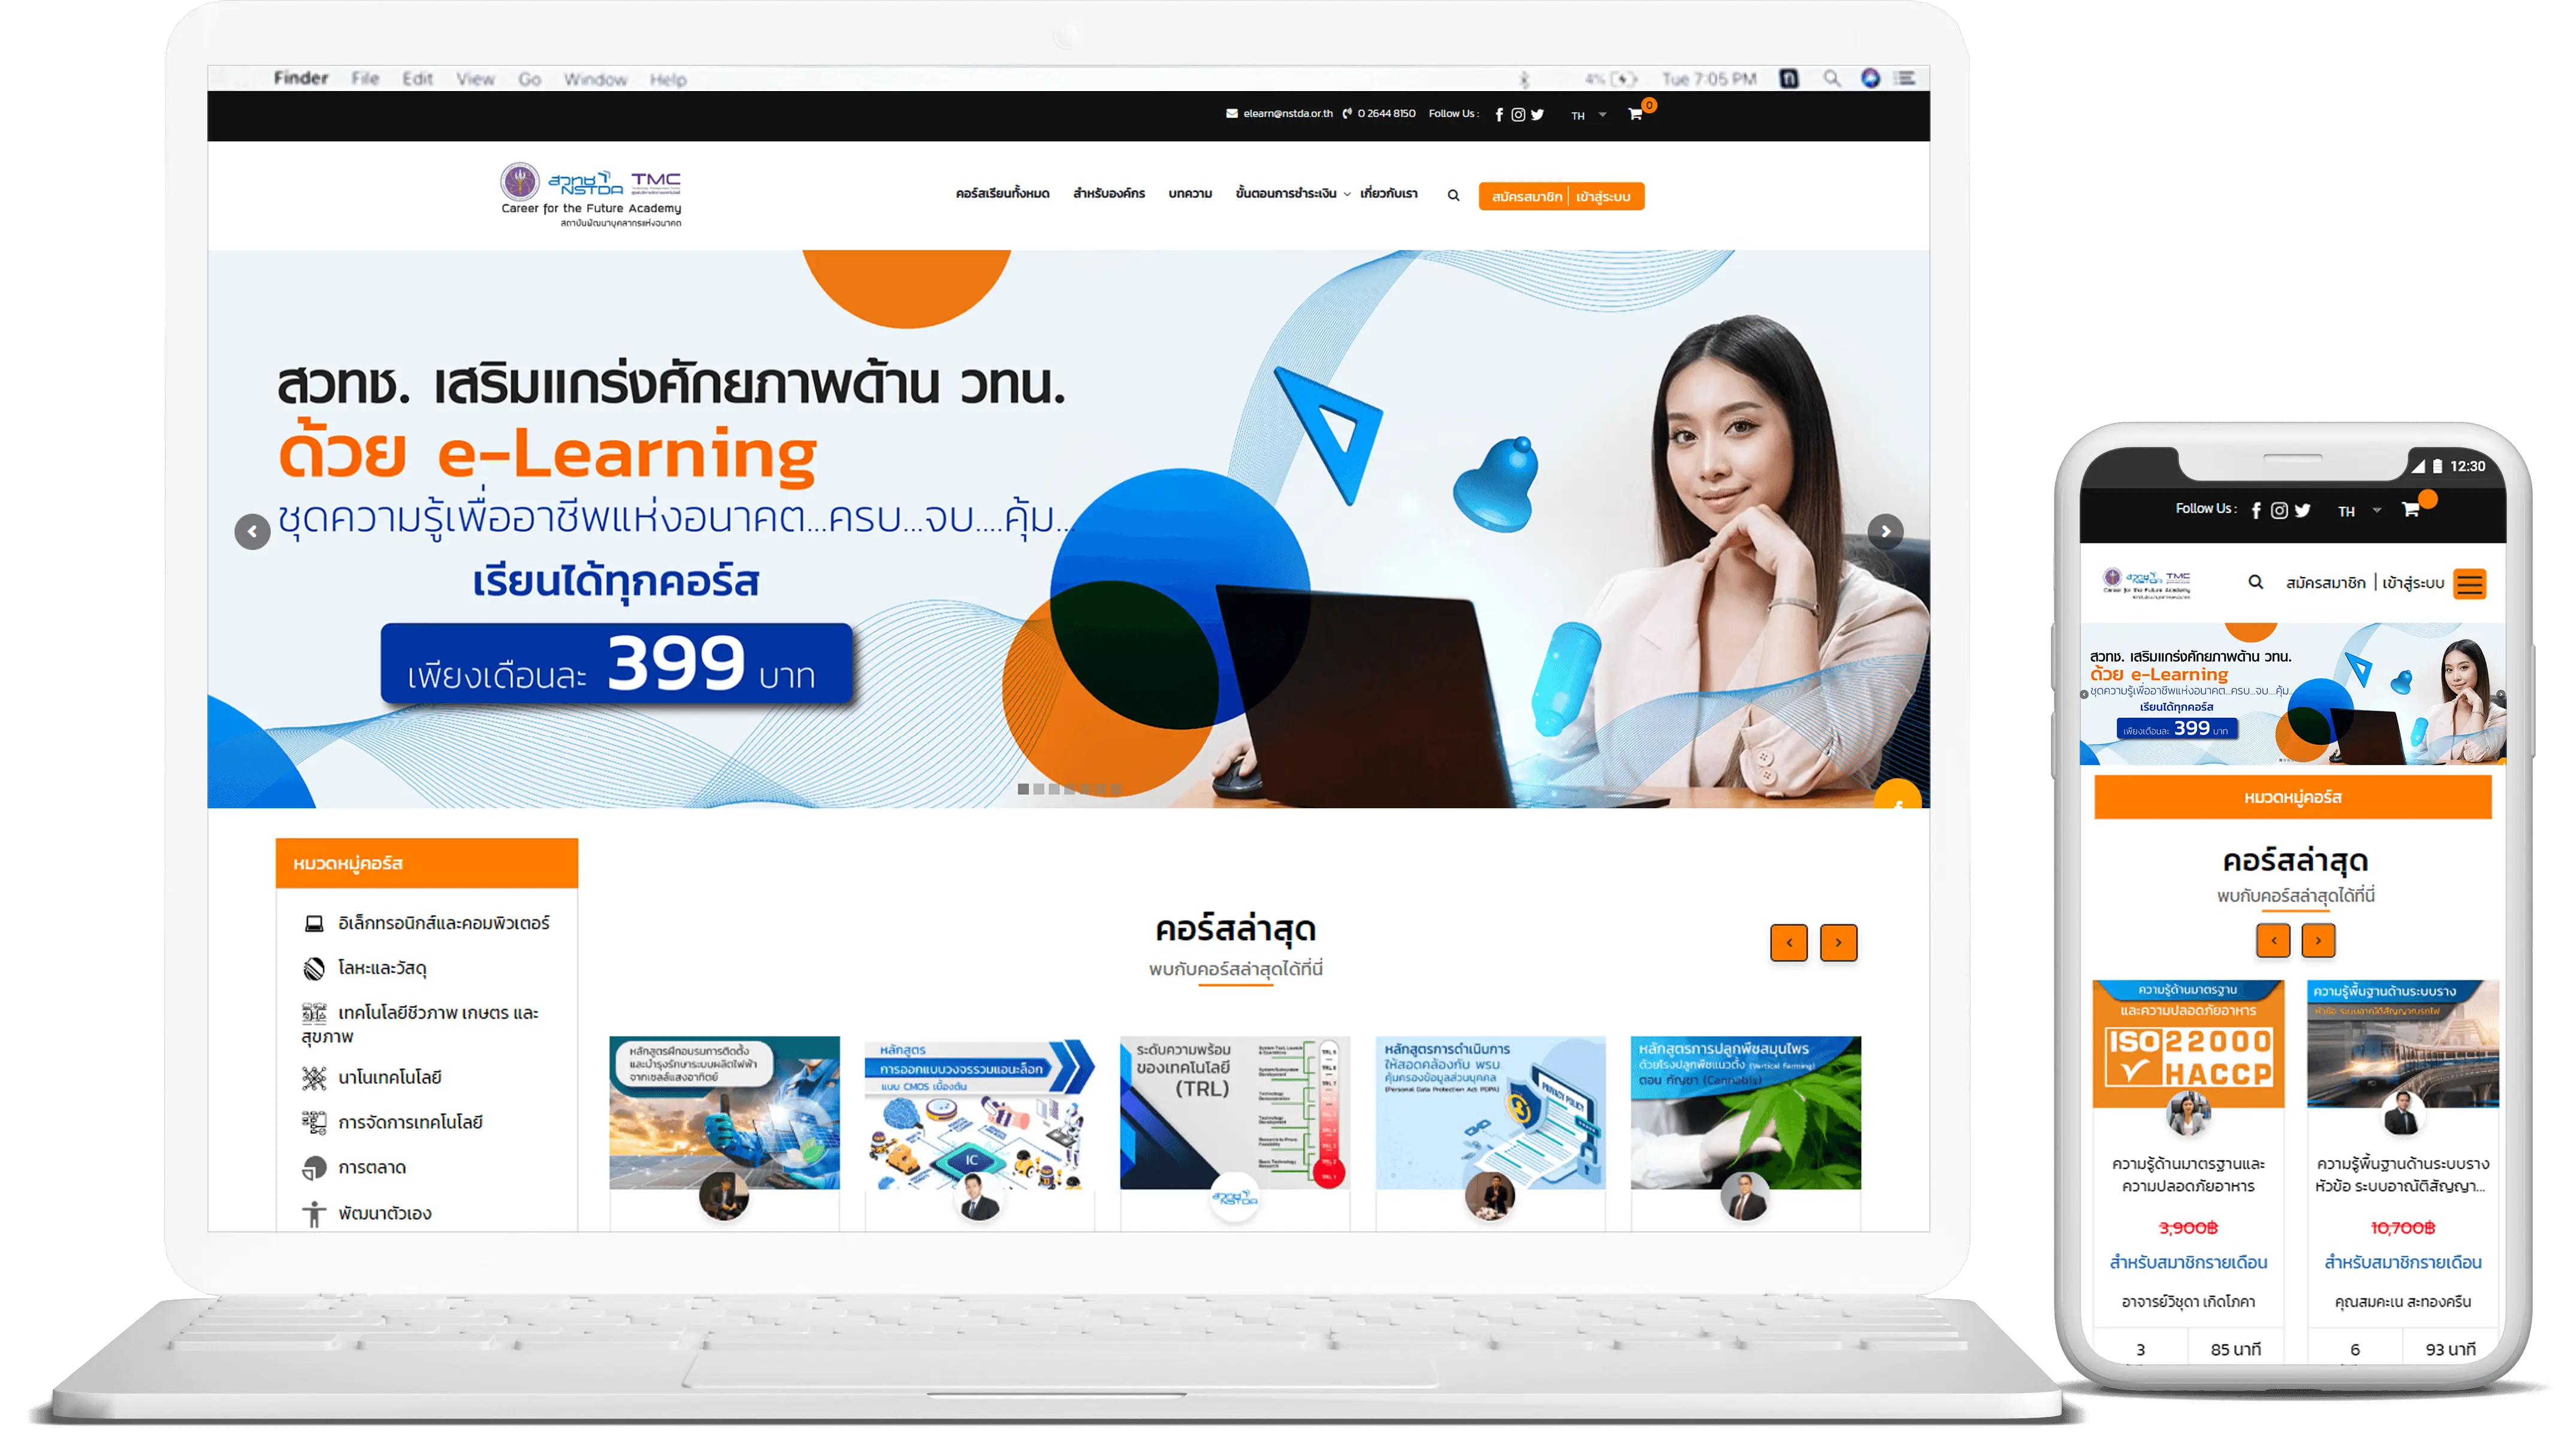 learnrockets e-learning career4future